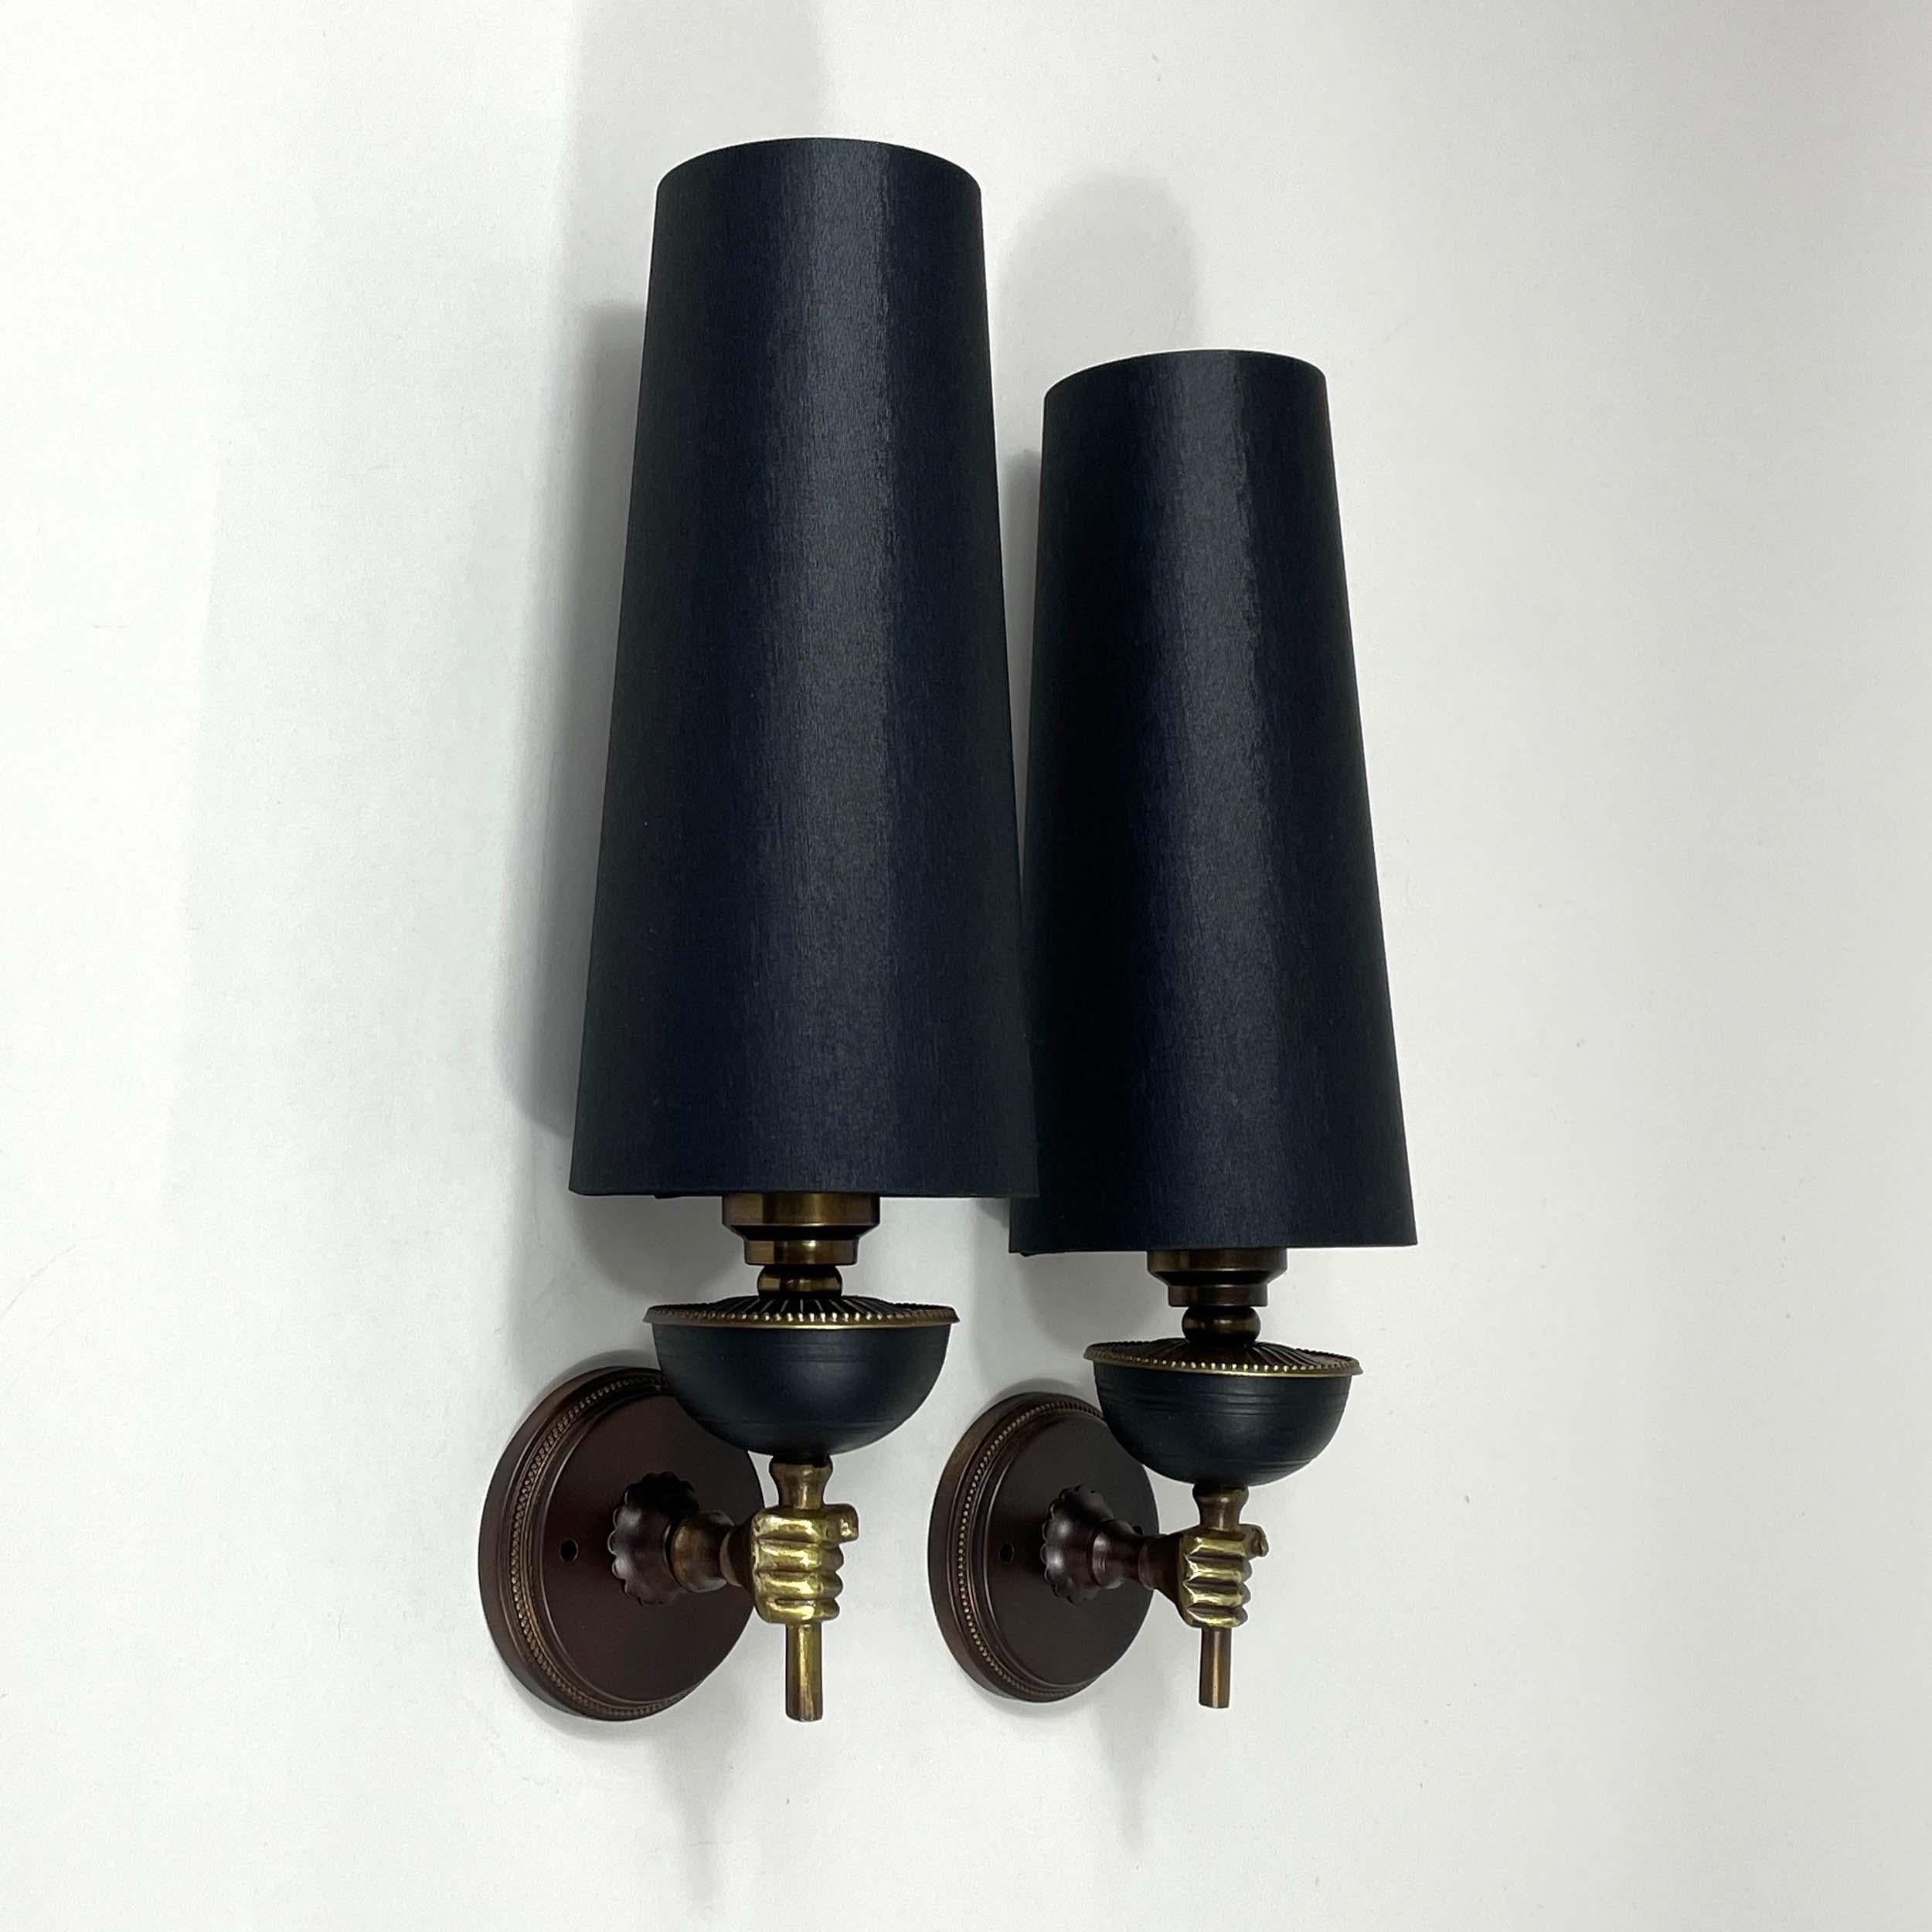 Estos inusuales apliques vintage fueron diseñados y fabricados en Francia en la década de 1950. Llevan lámparas antorcha de latón/bronce con pantallas de tela de seda negra (nuevas) hechas a mano.

Con cable para su uso en EE.UU., Europa y Asia, las